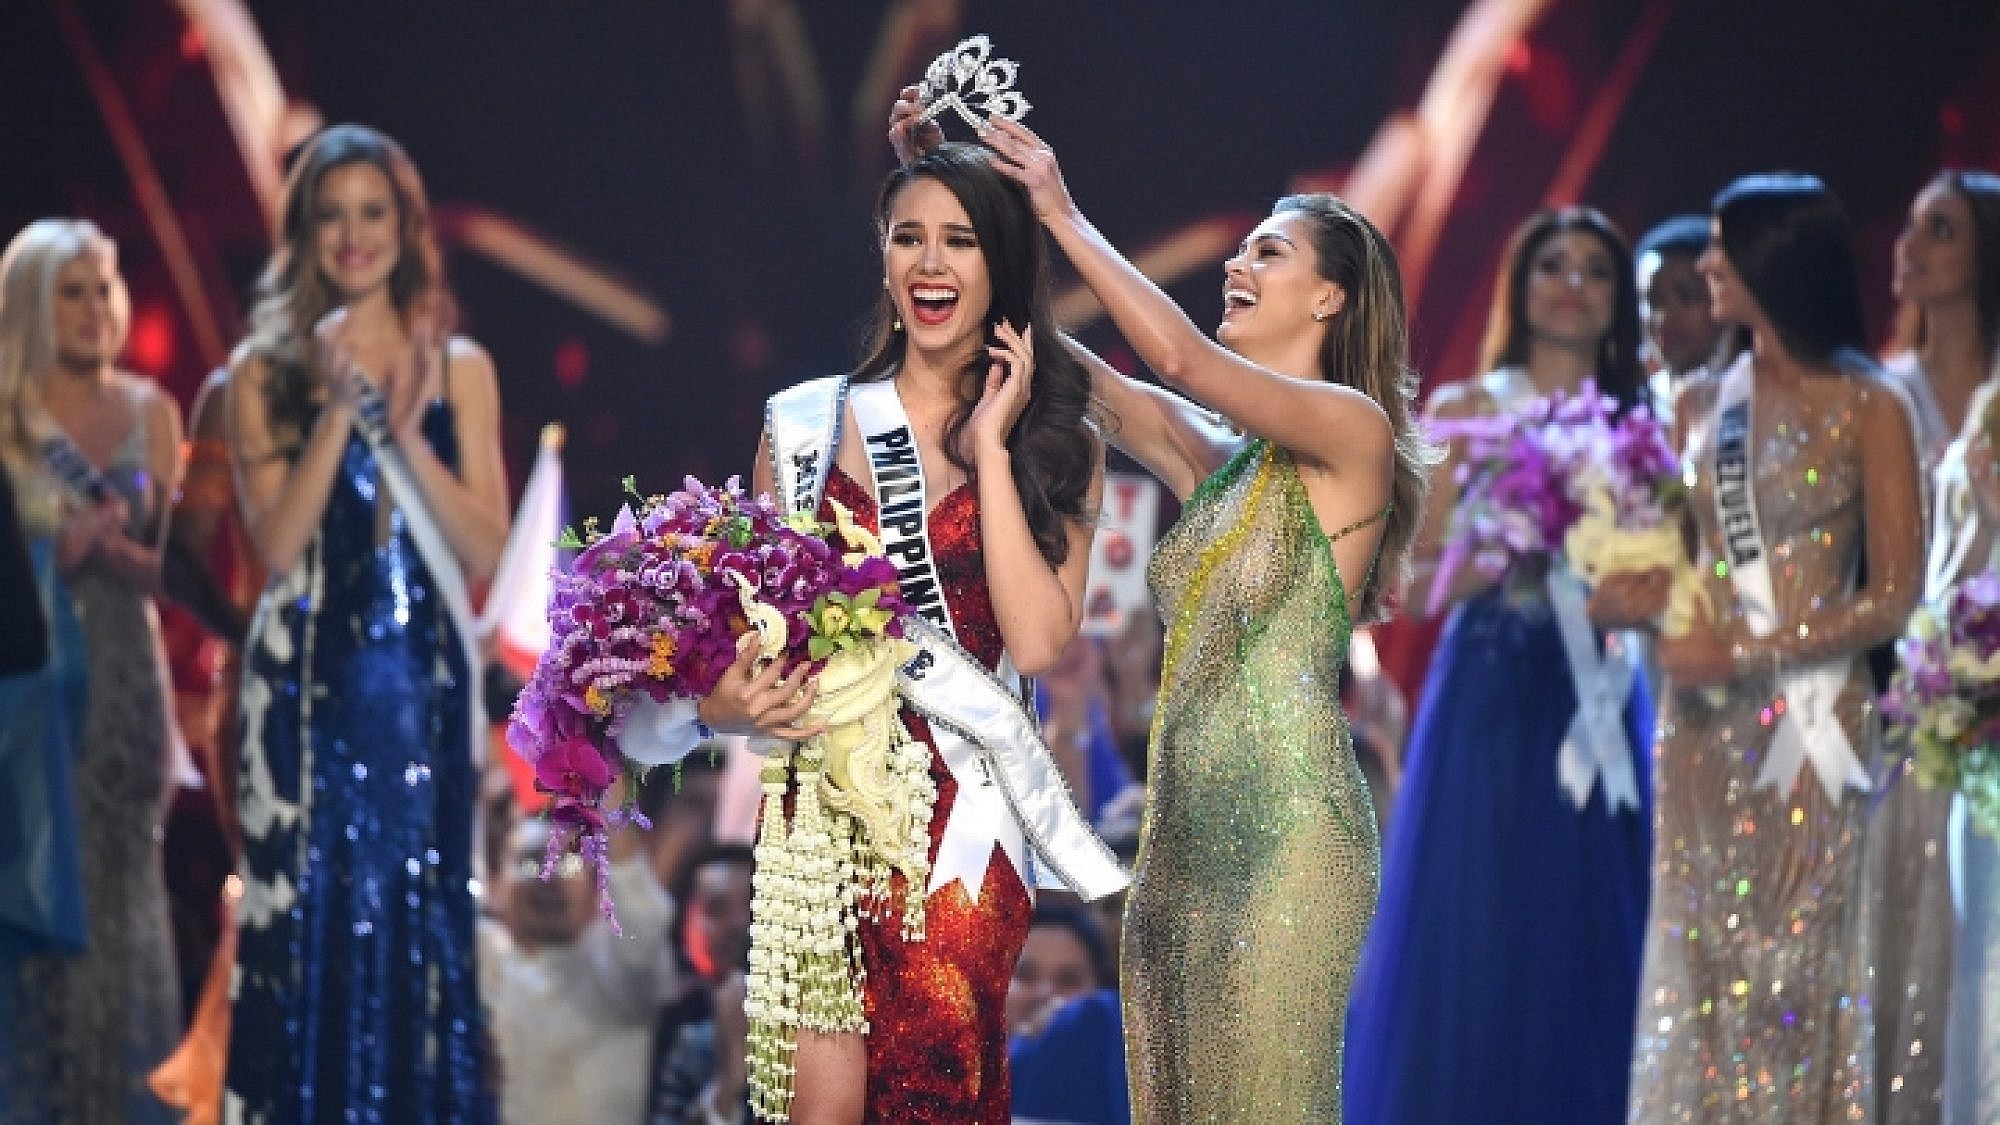 המנצחת של תחרות מיס יוניברס קתריונה גריי, המתמודדת הפיליפינית | צילום: Gettyimages